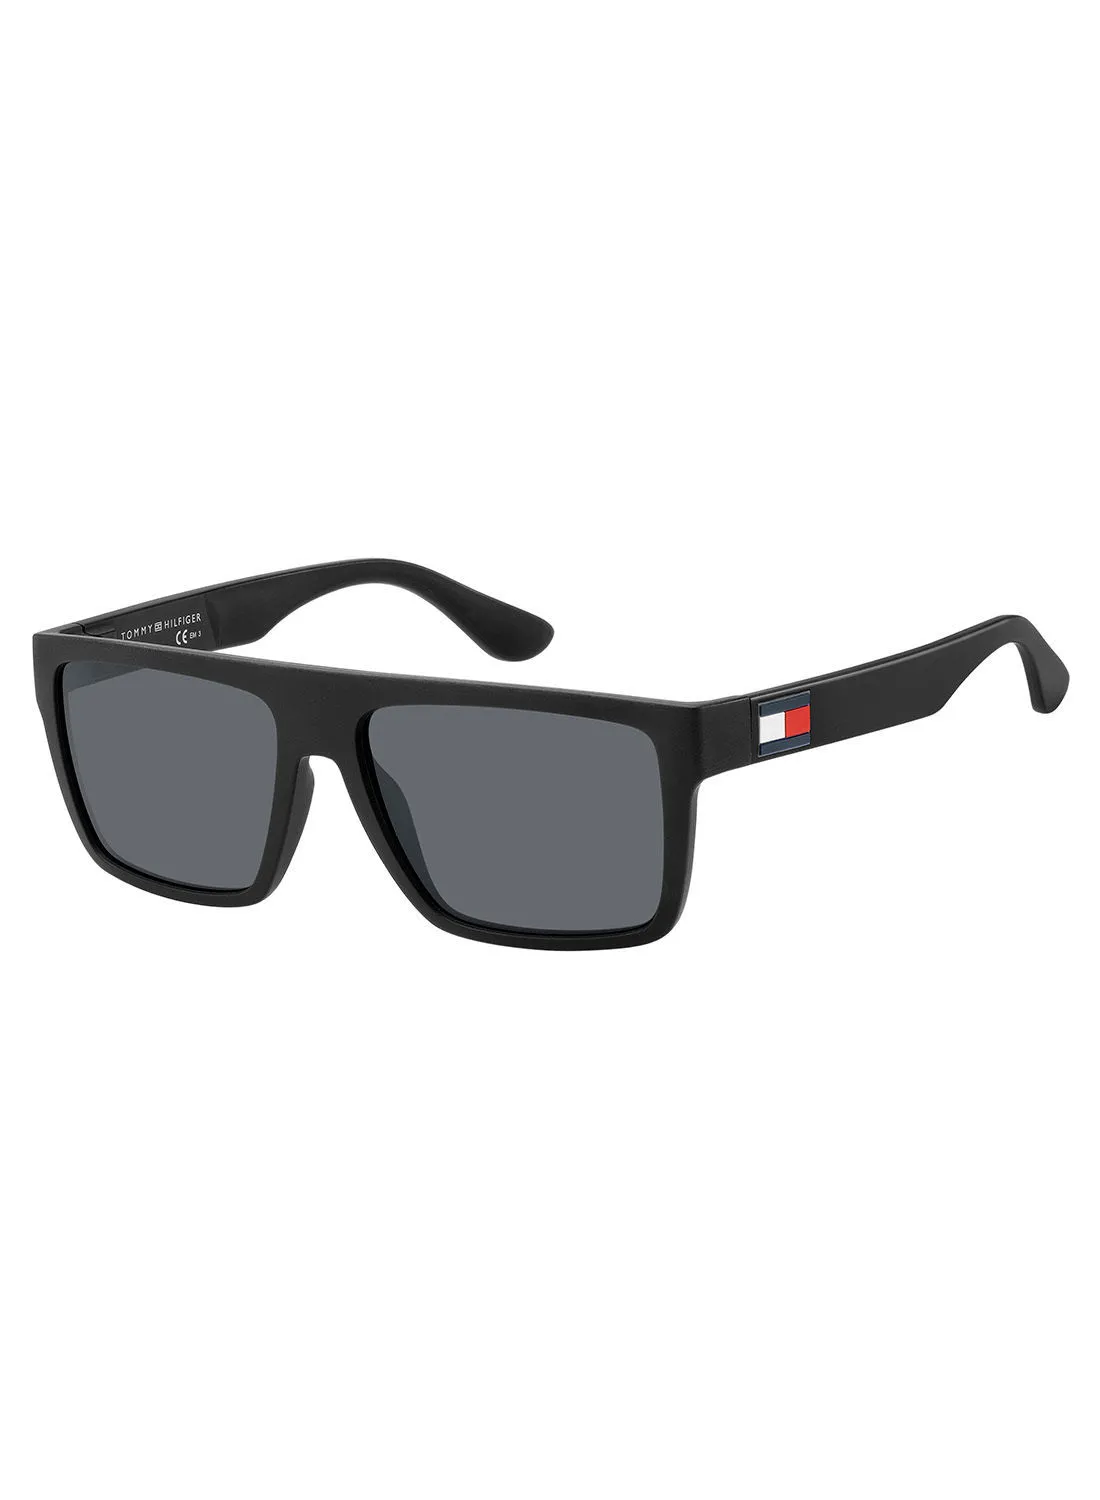 تومي هيلفيغر نظارة شمسية مستطيلة للحماية من الأشعة فوق البنفسجية TH 1605 / S MTT أسود 56